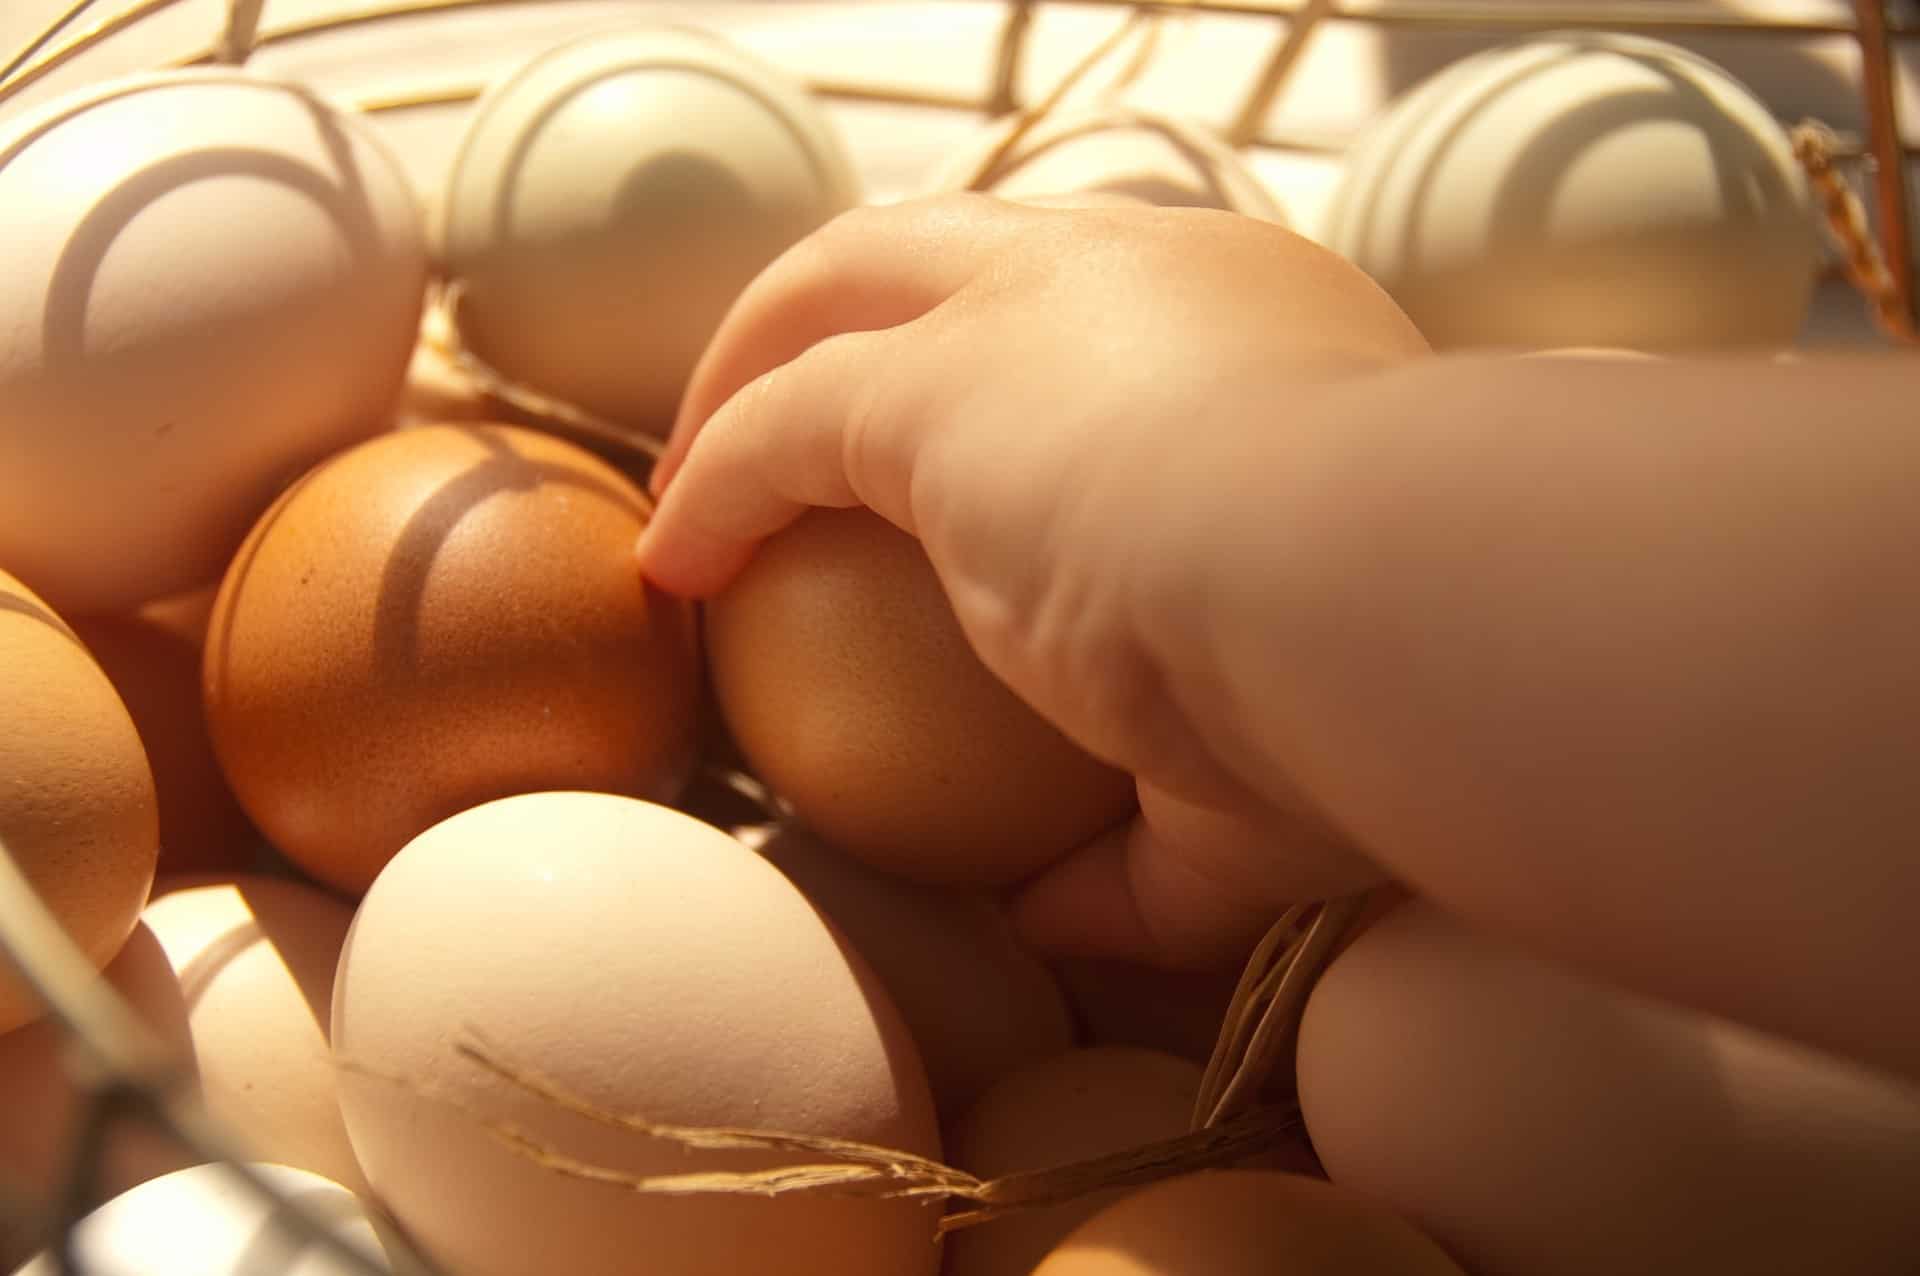 Куриным яйцам сложно найти альтернативу среди яиц других птиц